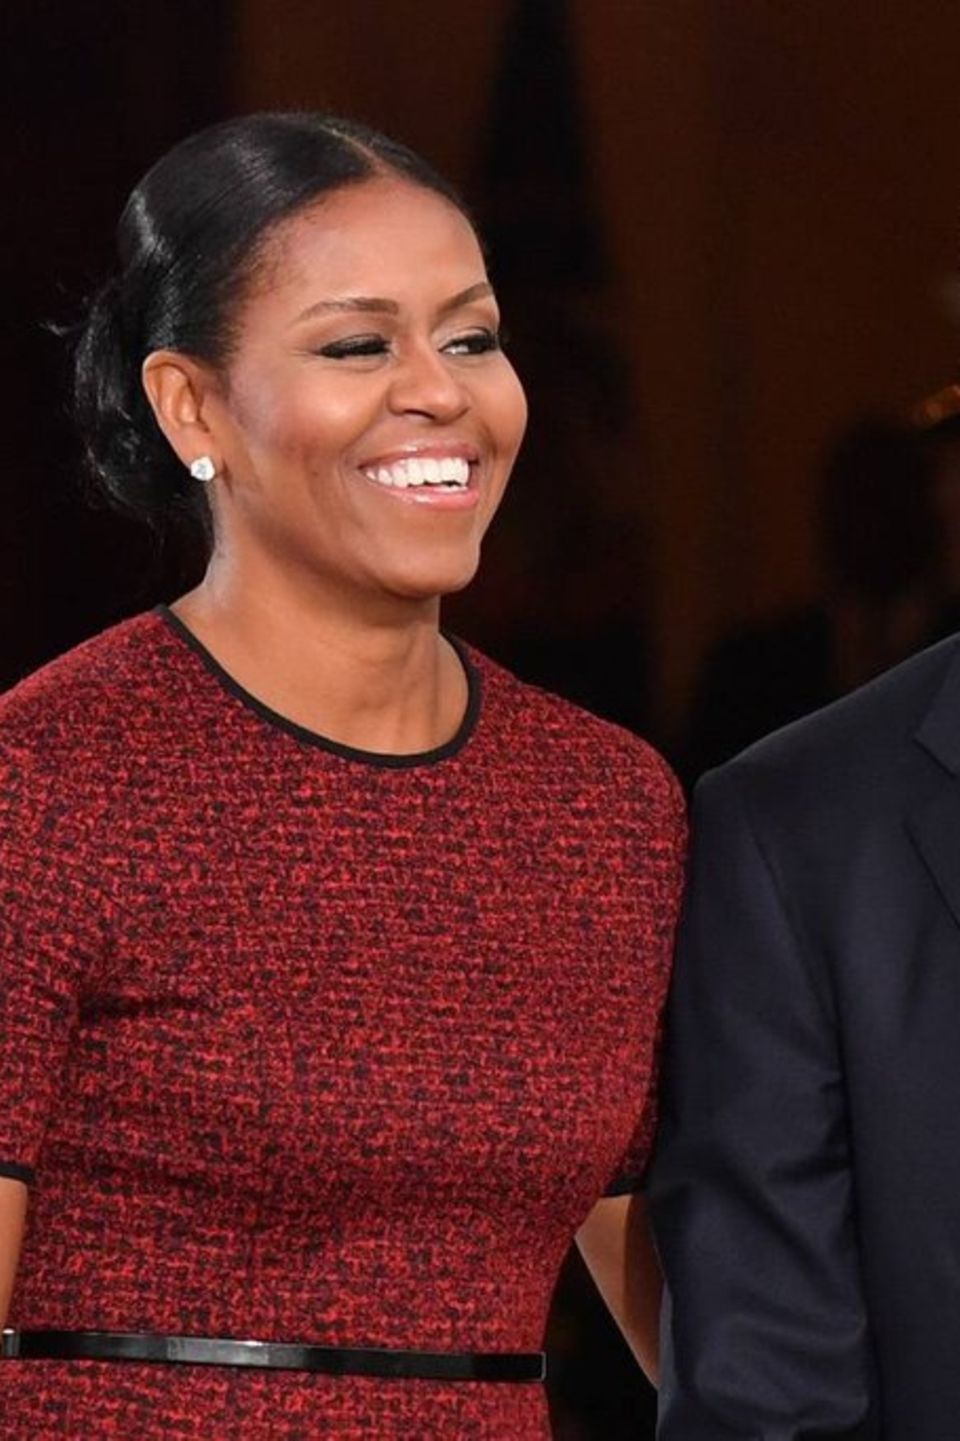 Ob Michelle und Barack Obama zum Zeitpunkt der Festnahme zu Hause gewesen sind, ist nicht bekannt.